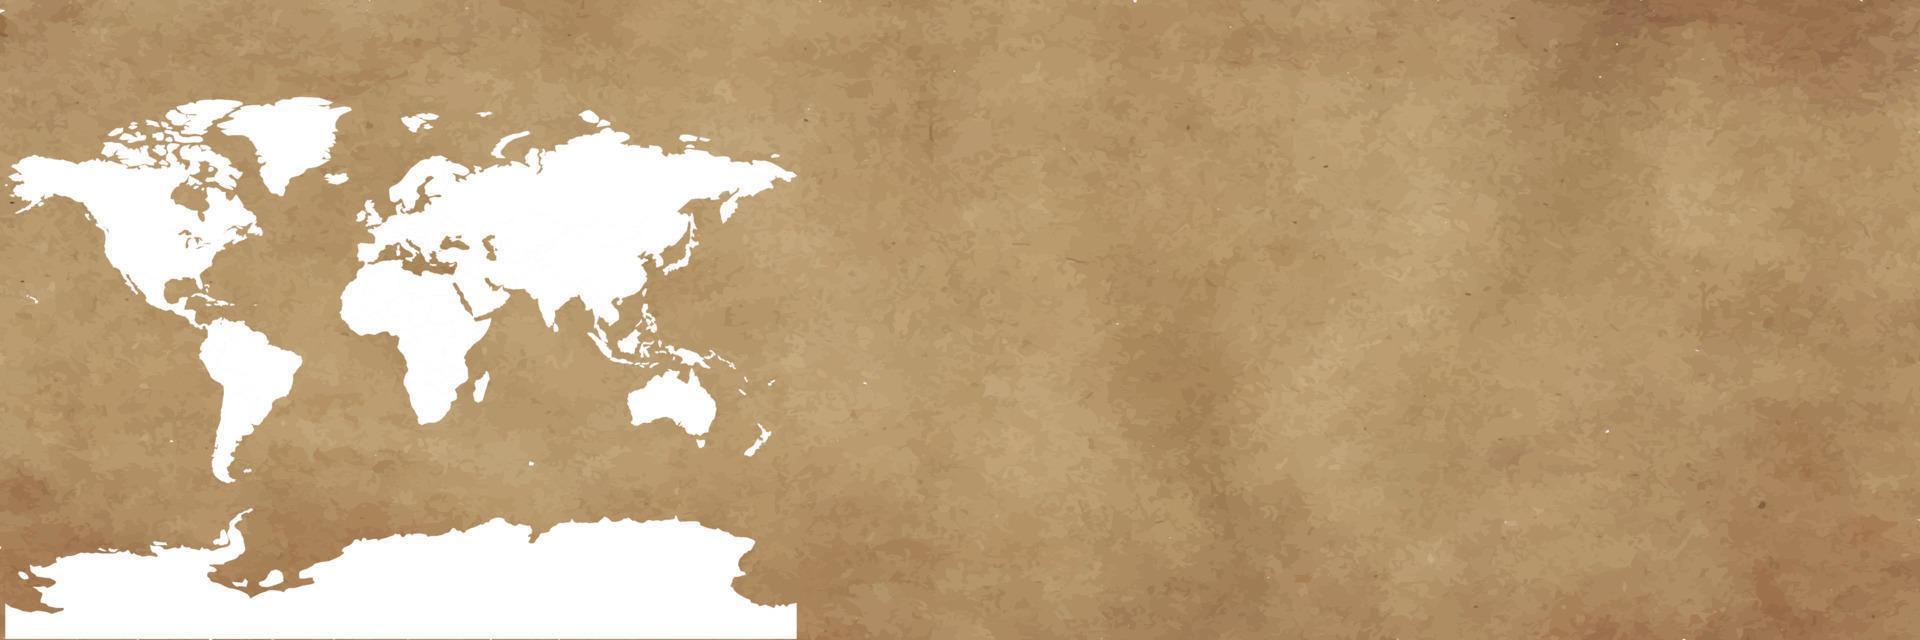 mapa do mundo no banner de fundo marrom vetor